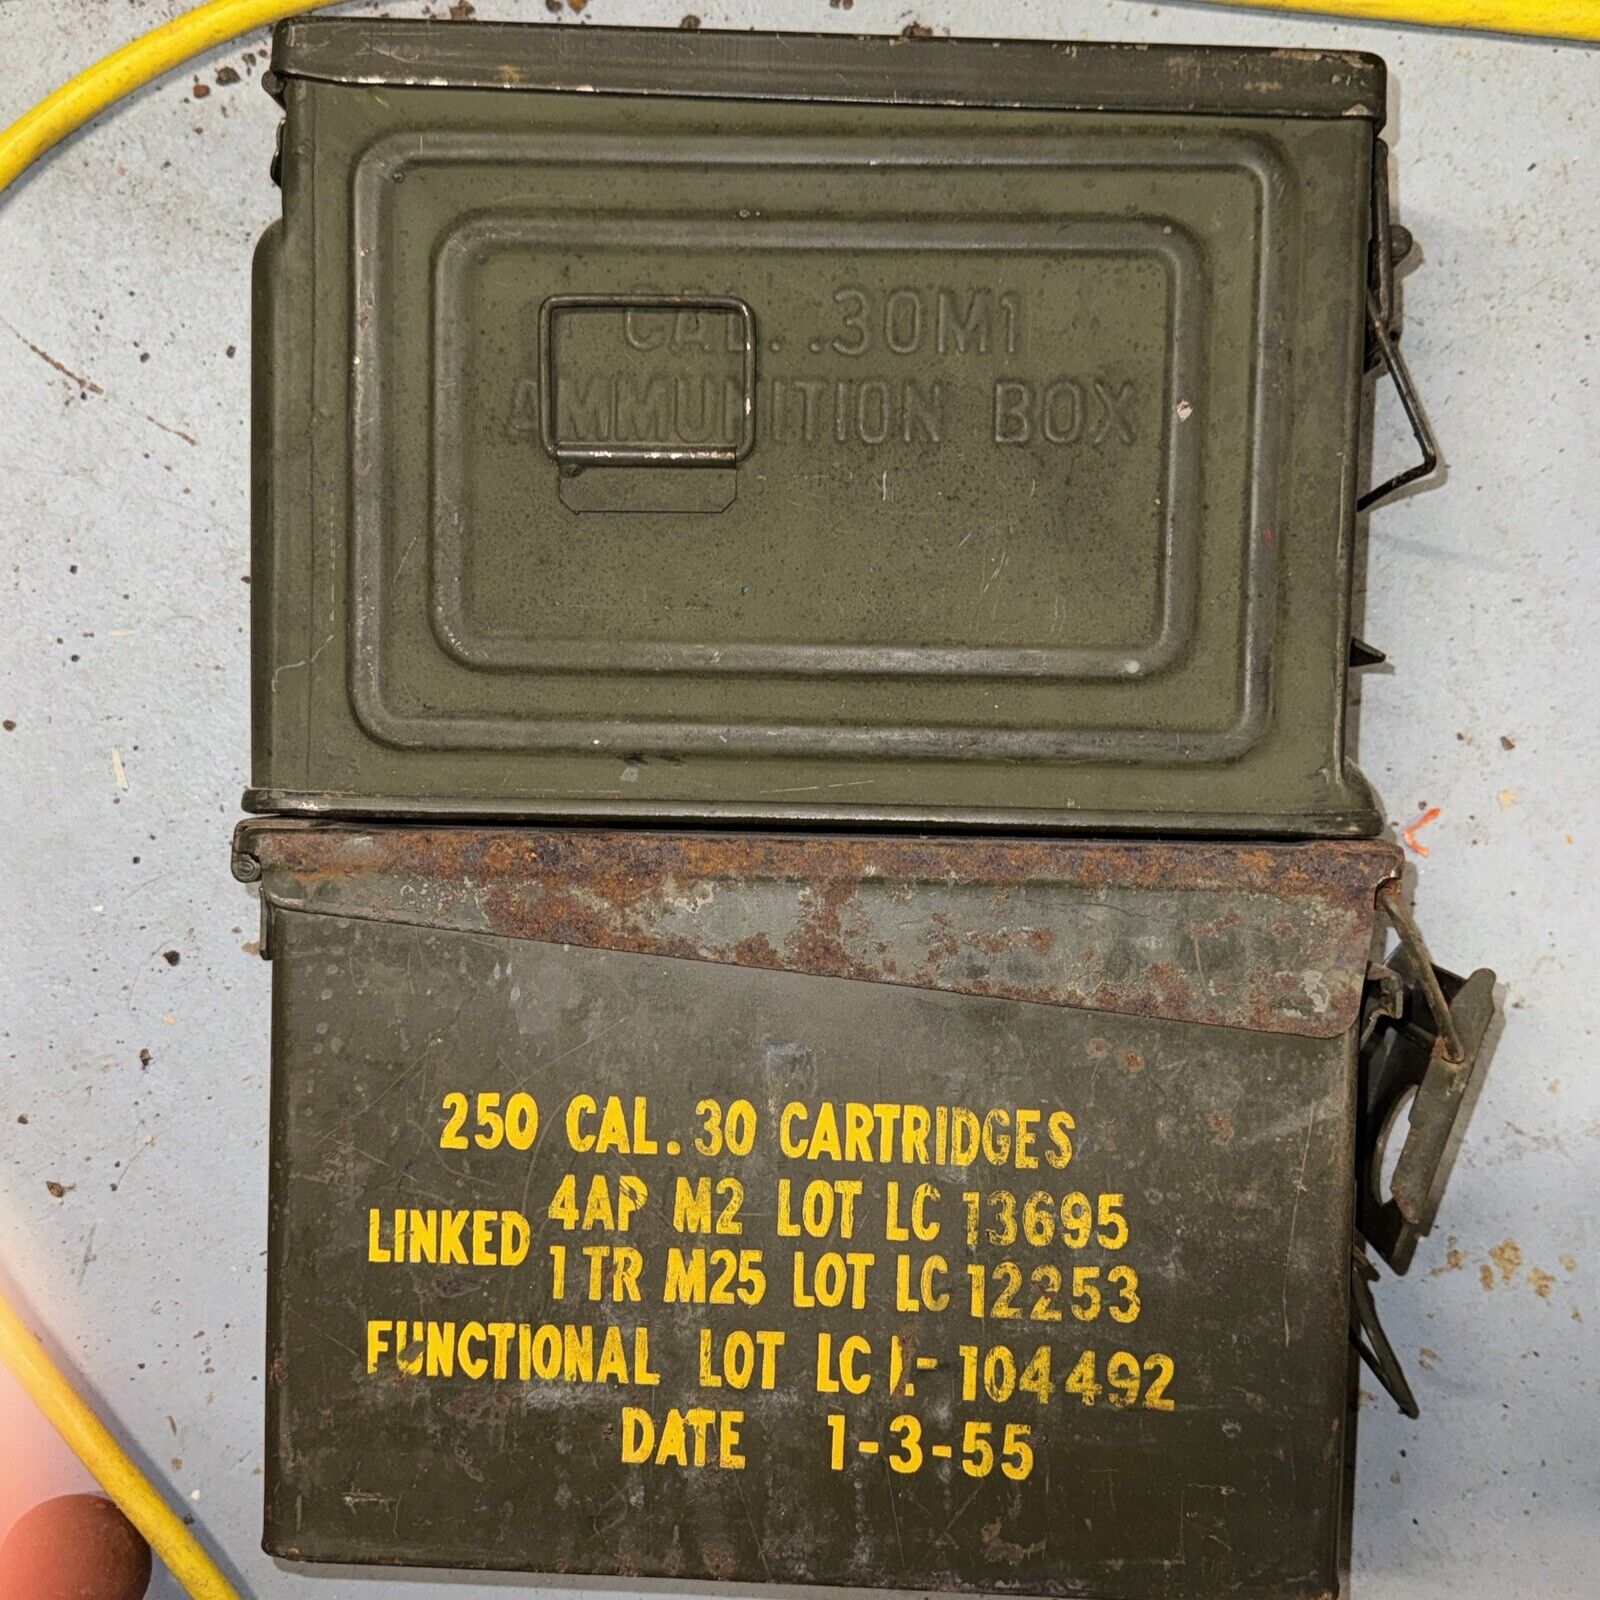 2 WW2 Korean War Era US Army .30 M1 Steel Ammunition Box OD Green Ammo Can